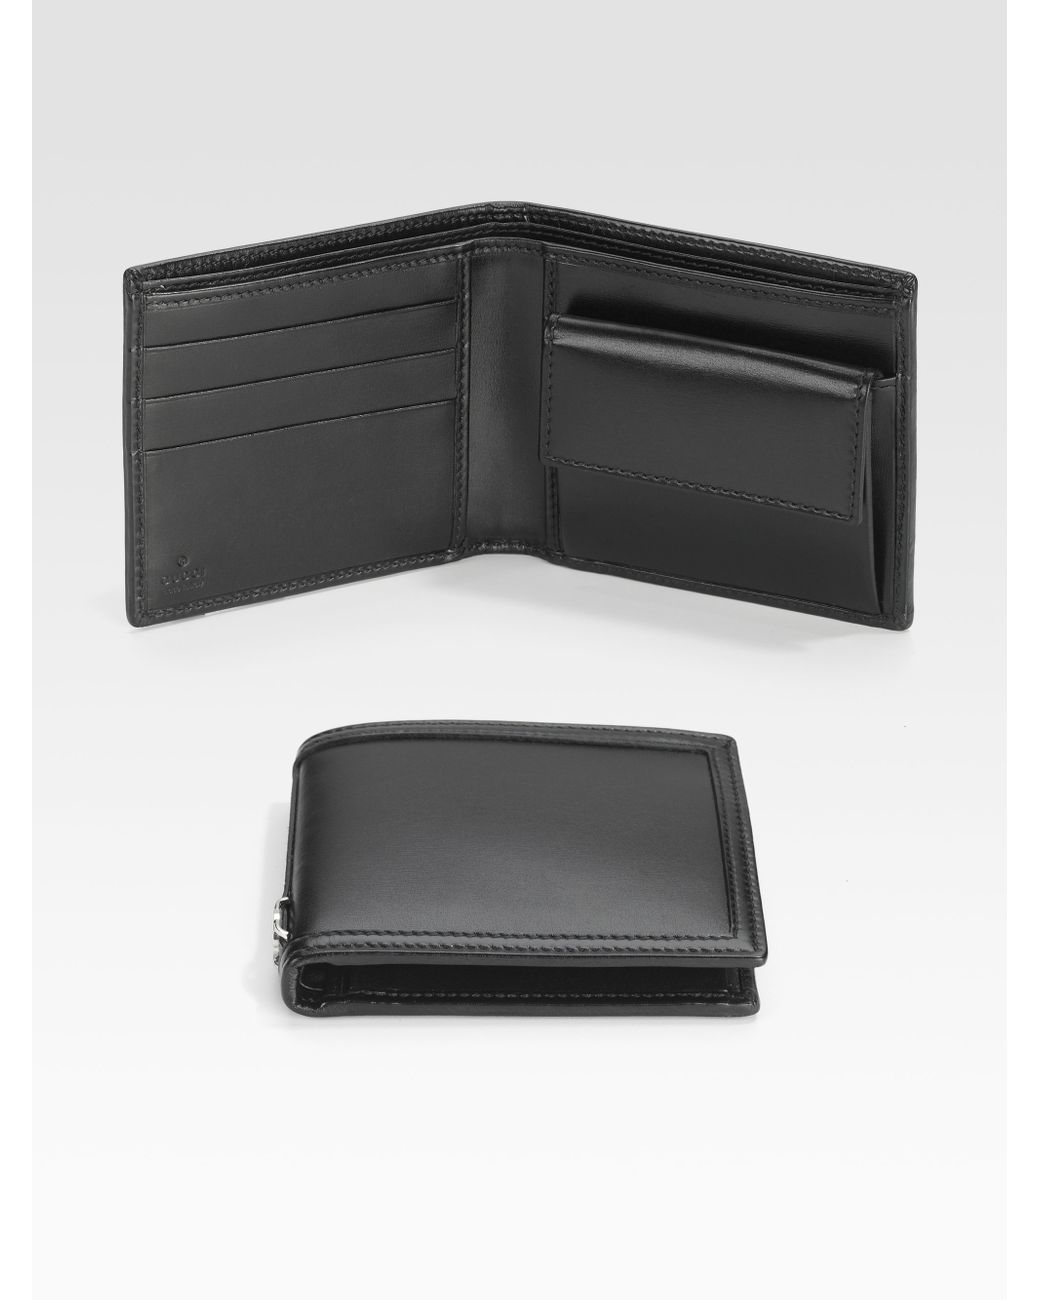 Gucci Coin Pocket Wallet in Black for Men